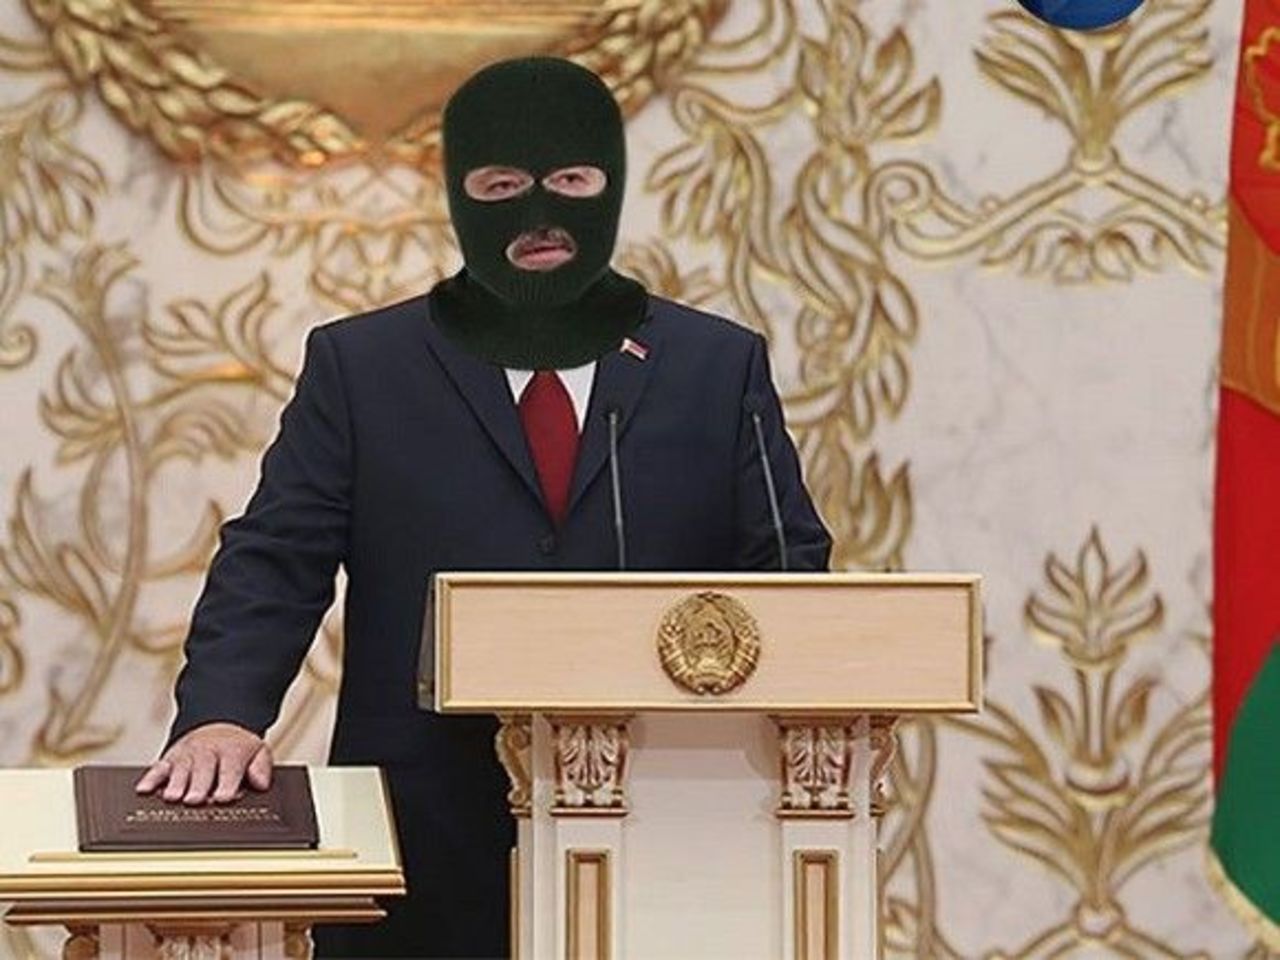 Лукашенко Анекдот